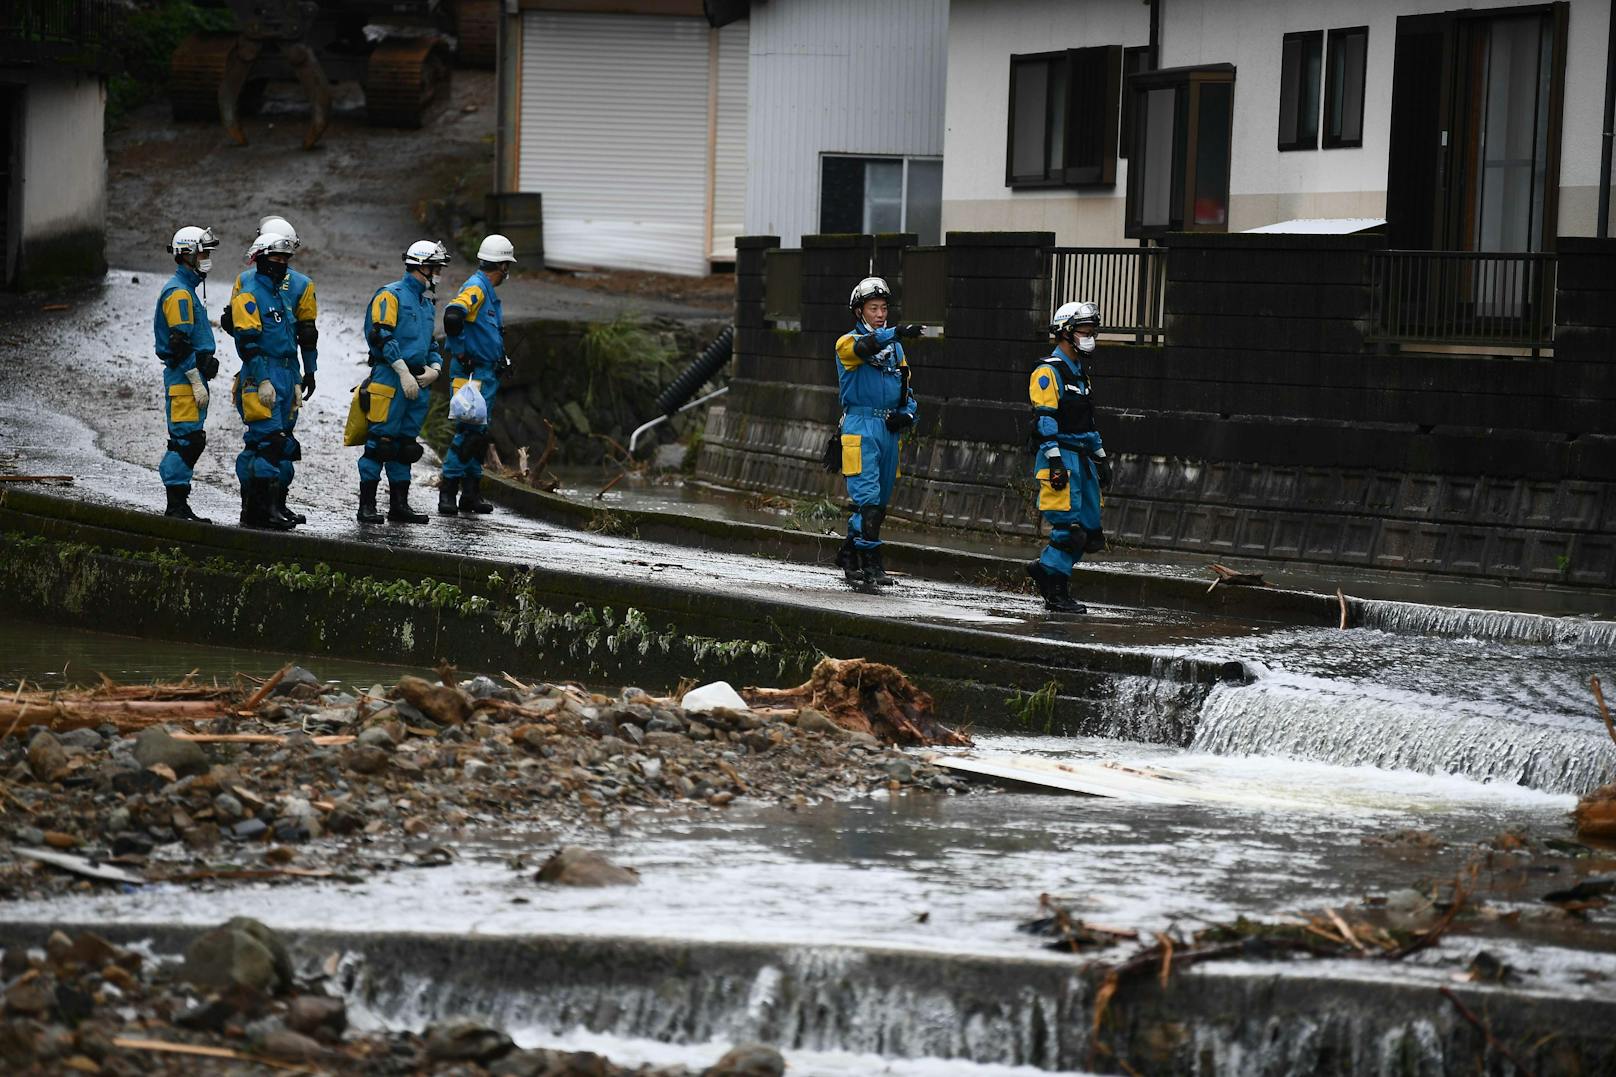  Einsatzkräfte suchen nach einem Murenabgang in der Gemeinde Tsunagi, Präfektur Kumamoto, nach Vermissten (7. Juli 2020)